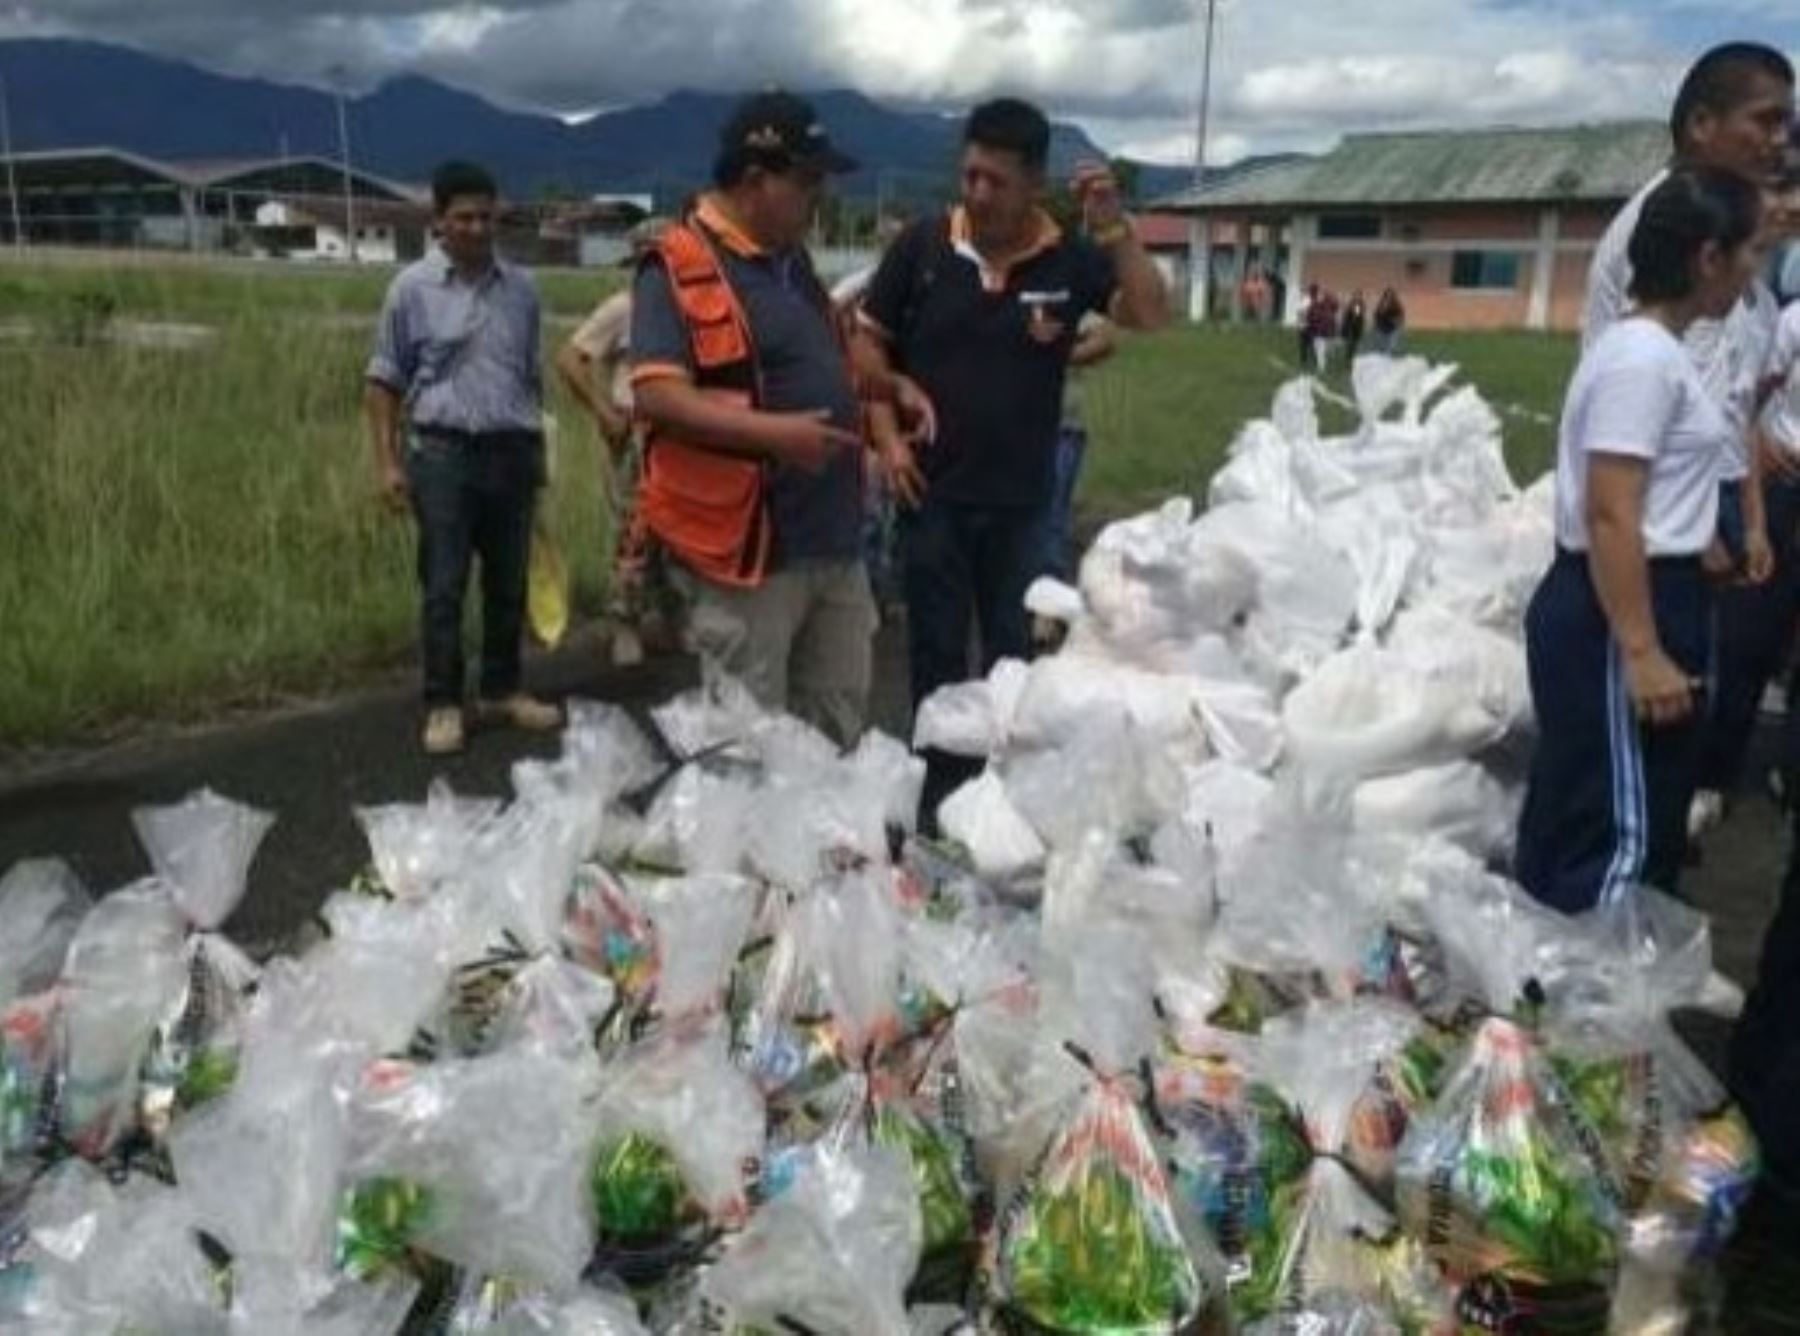 El Gobierno Regional de San Martín entregó hasta el momento un total de 1.96 toneladas de ayuda humanitaria a los damnificados por inundaciones de la provincia de Picota, informó el Instituto Nacional de Defensa Civil al Centro de Operaciones de Emergencia Nacional del Ministerio de Defensa (COEN Defensa).